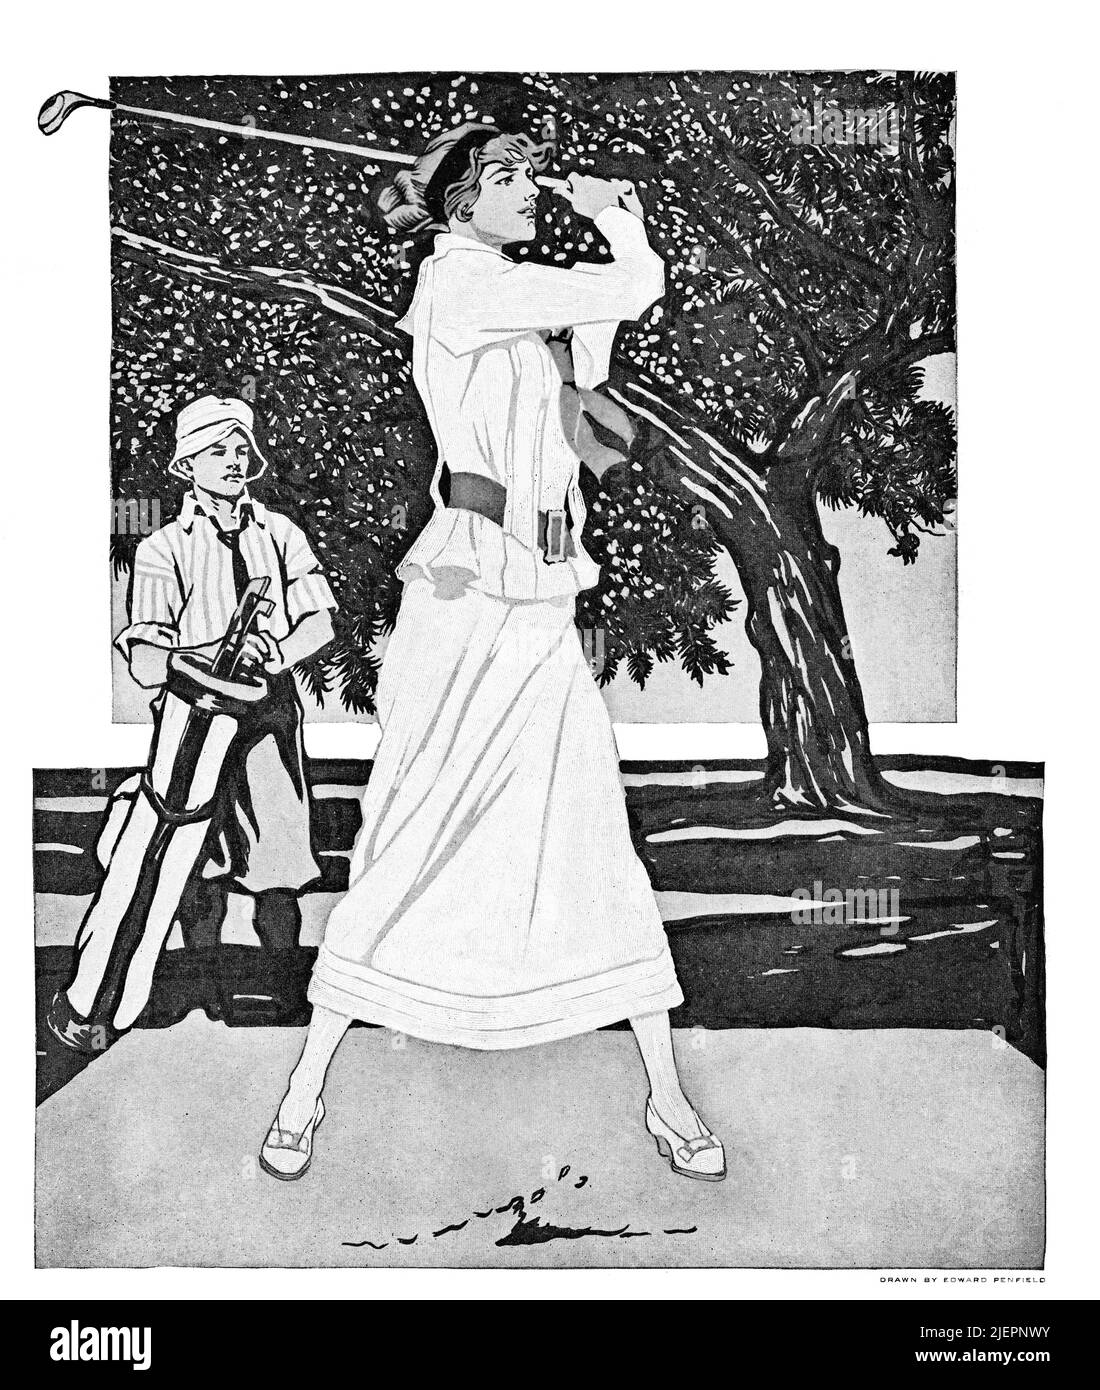 Une illustration du début du 20th siècle par Edward Penfield (1866-1925) sur la couverture de collier's, un magazine d'intérêt général américain mettant en vedette une dame golfeuse et regardant caddie. Banque D'Images